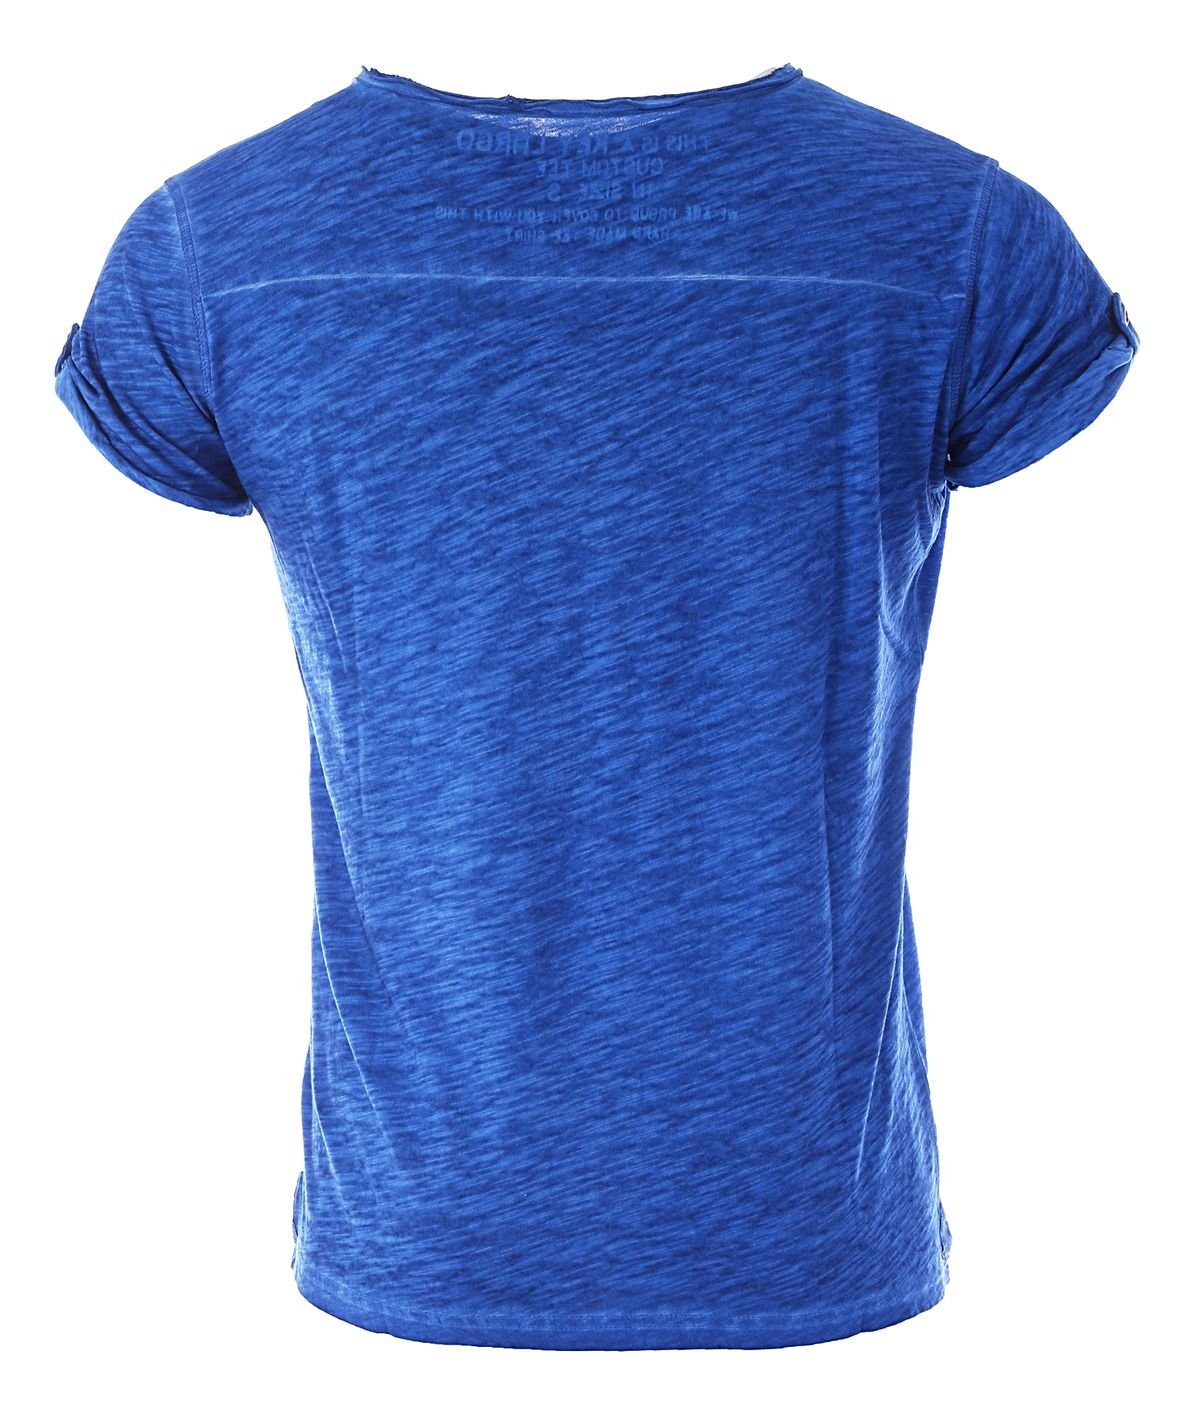 Key Largo T-Shirt für Herren mit Blau unifarben vintage Knopfleiste Arena button kurzarm MT00023 slim fit Look